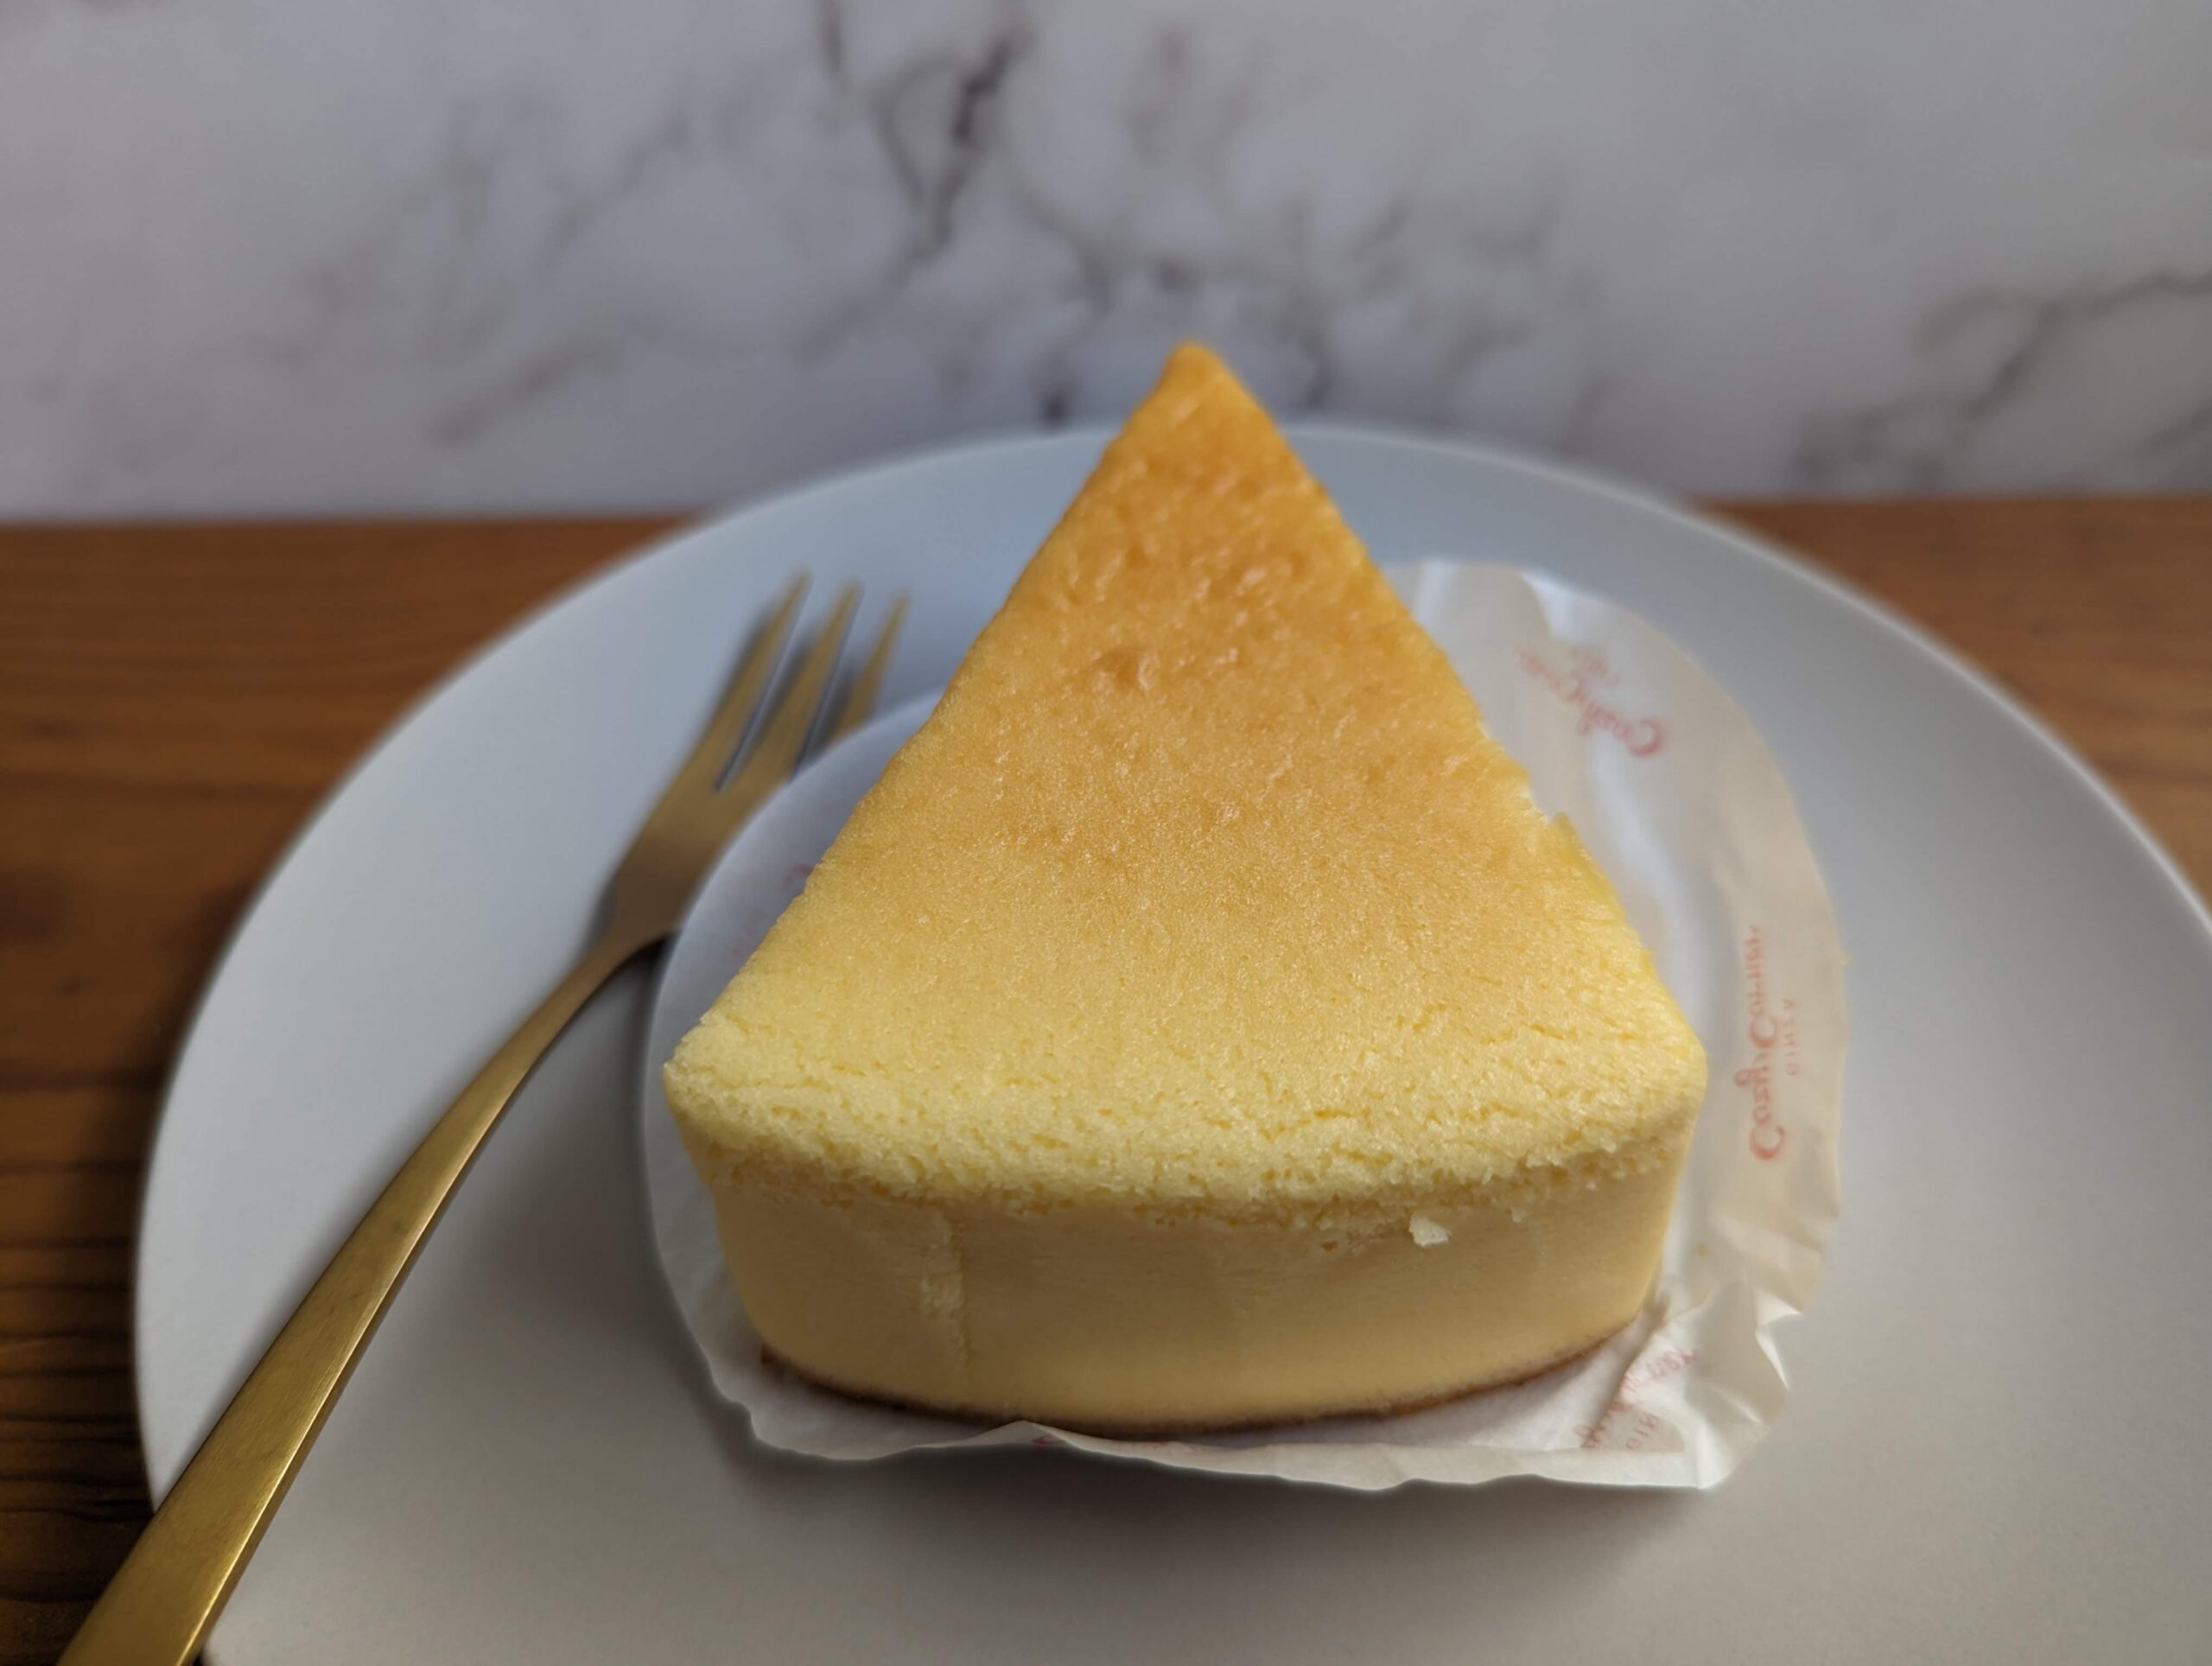 銀座コージーコーナーの「チーズケーキ」の写真 (6)